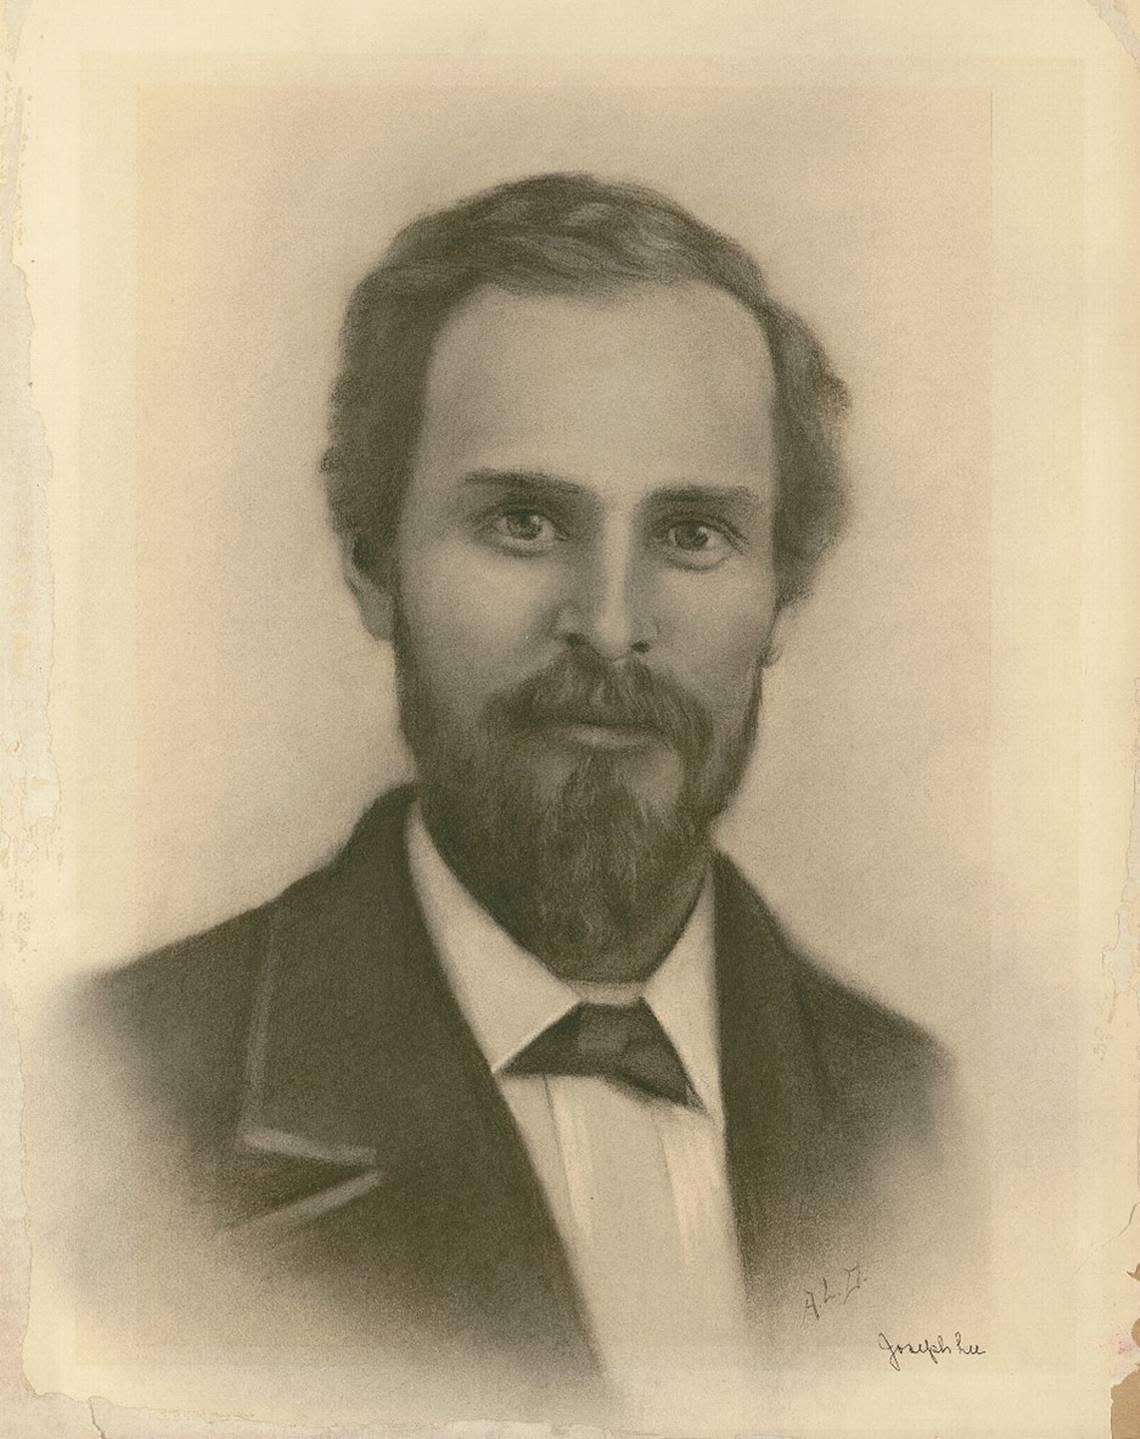 Joseph C. Lea